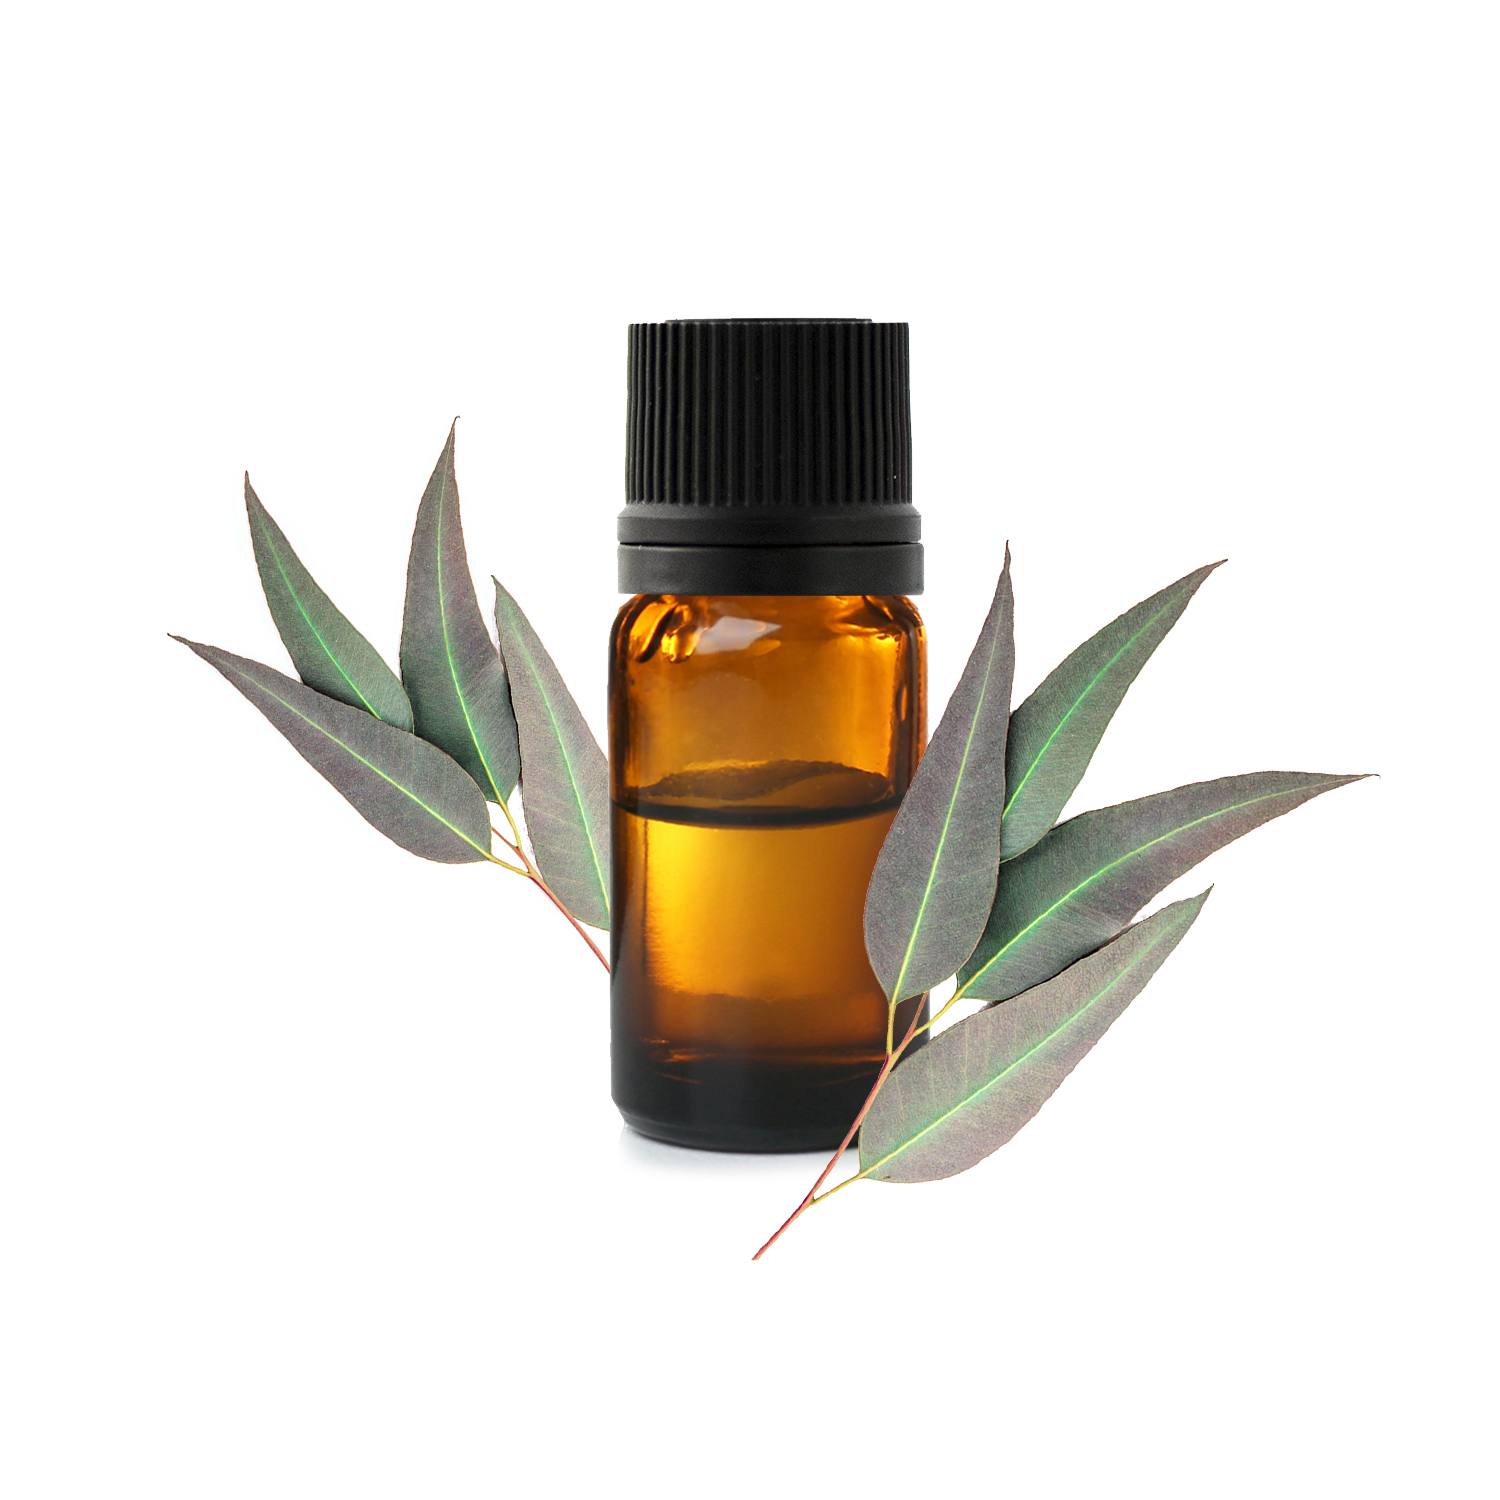 Anti-mouche naturel : 9 solutions répulsives et huiles essentielles -  Aroma-Zone